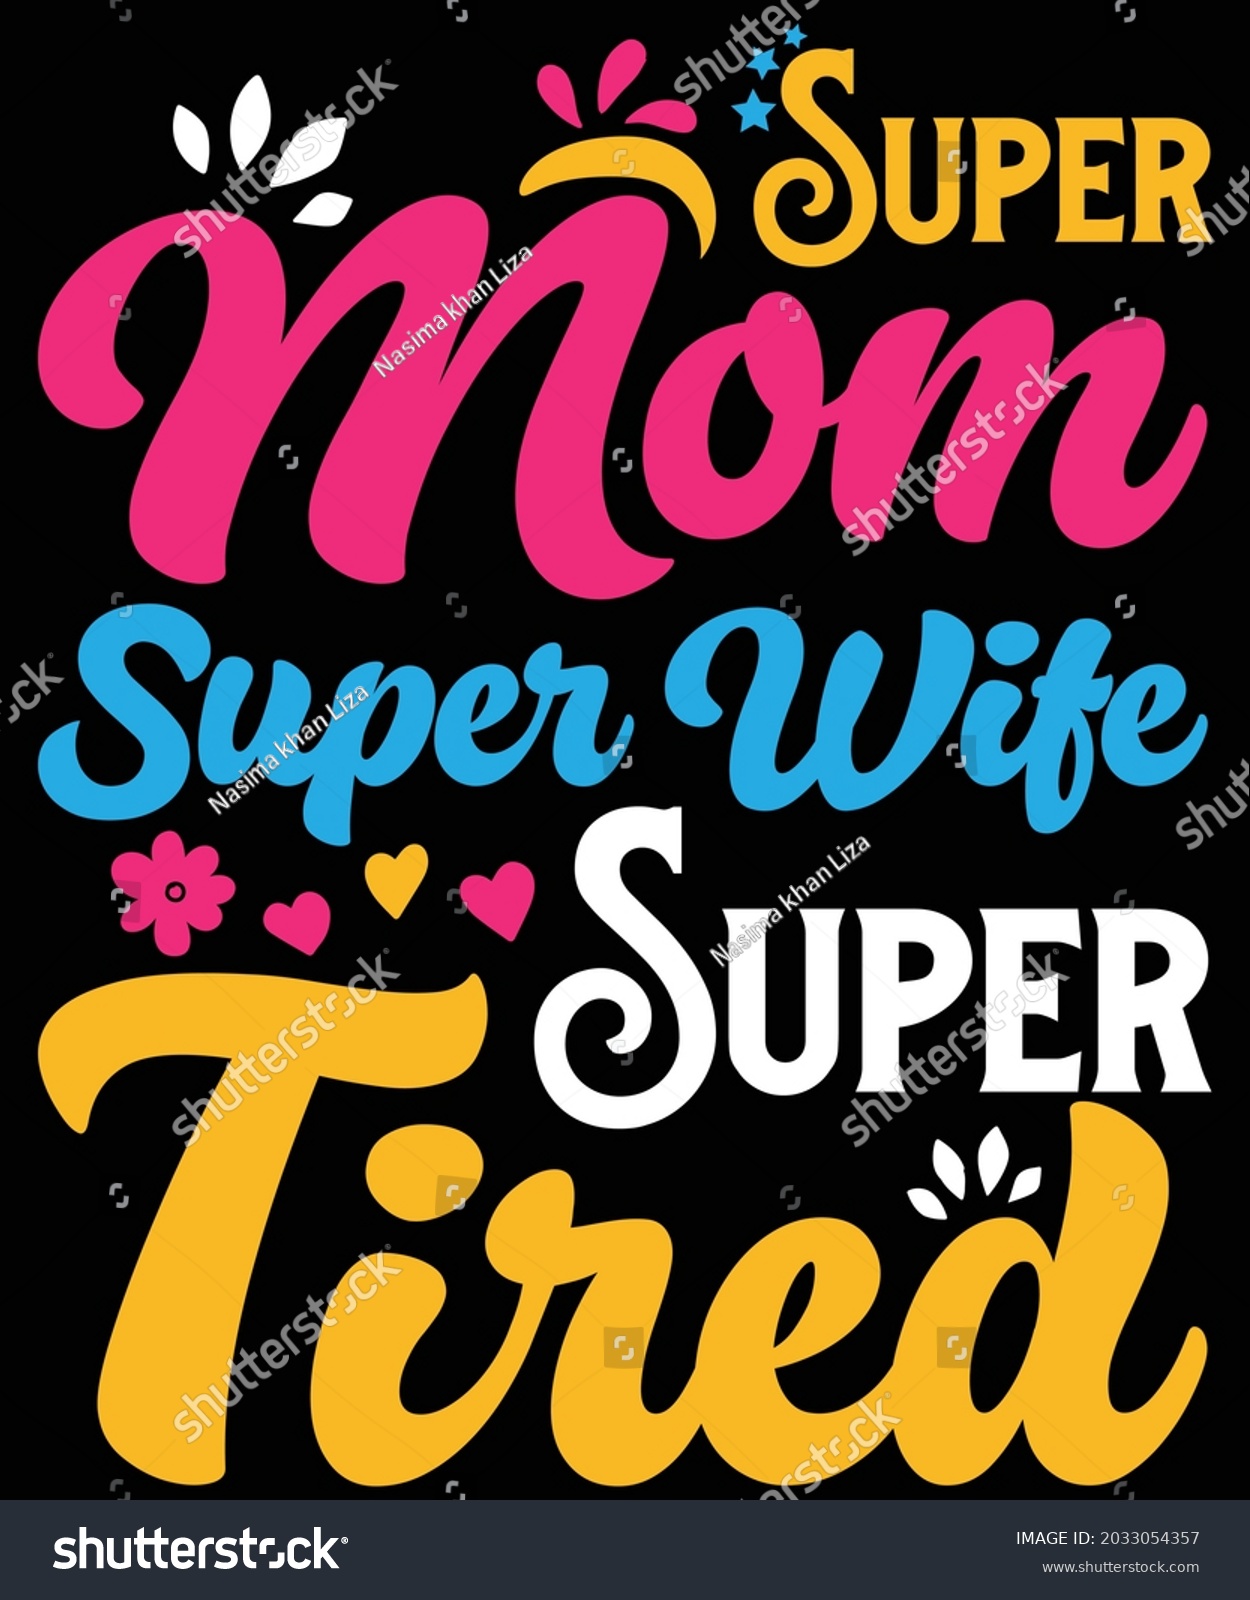 SVG of Super mom super wife super tired t-shirt design svg